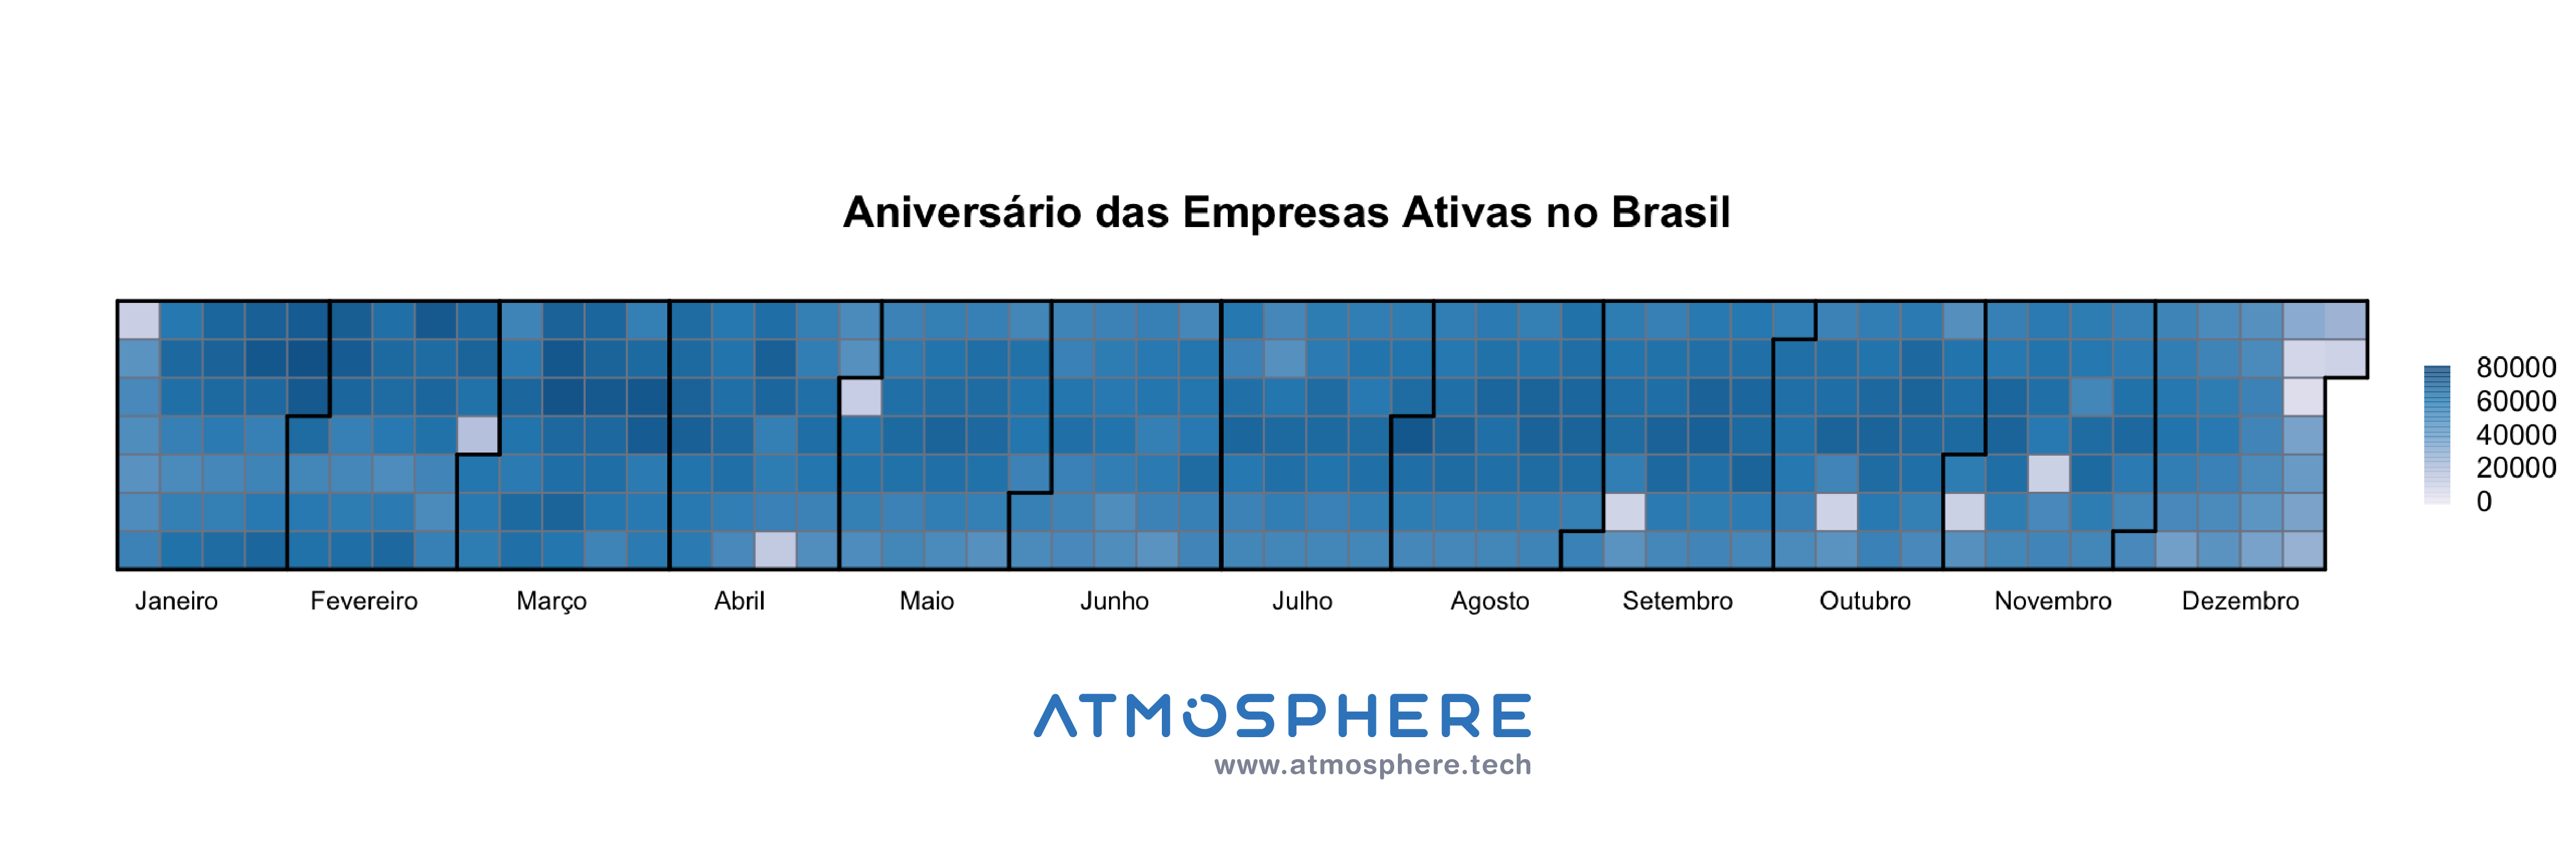 [Oportunidados Calendário de Aniversário das Empresas Ativas no Brasil